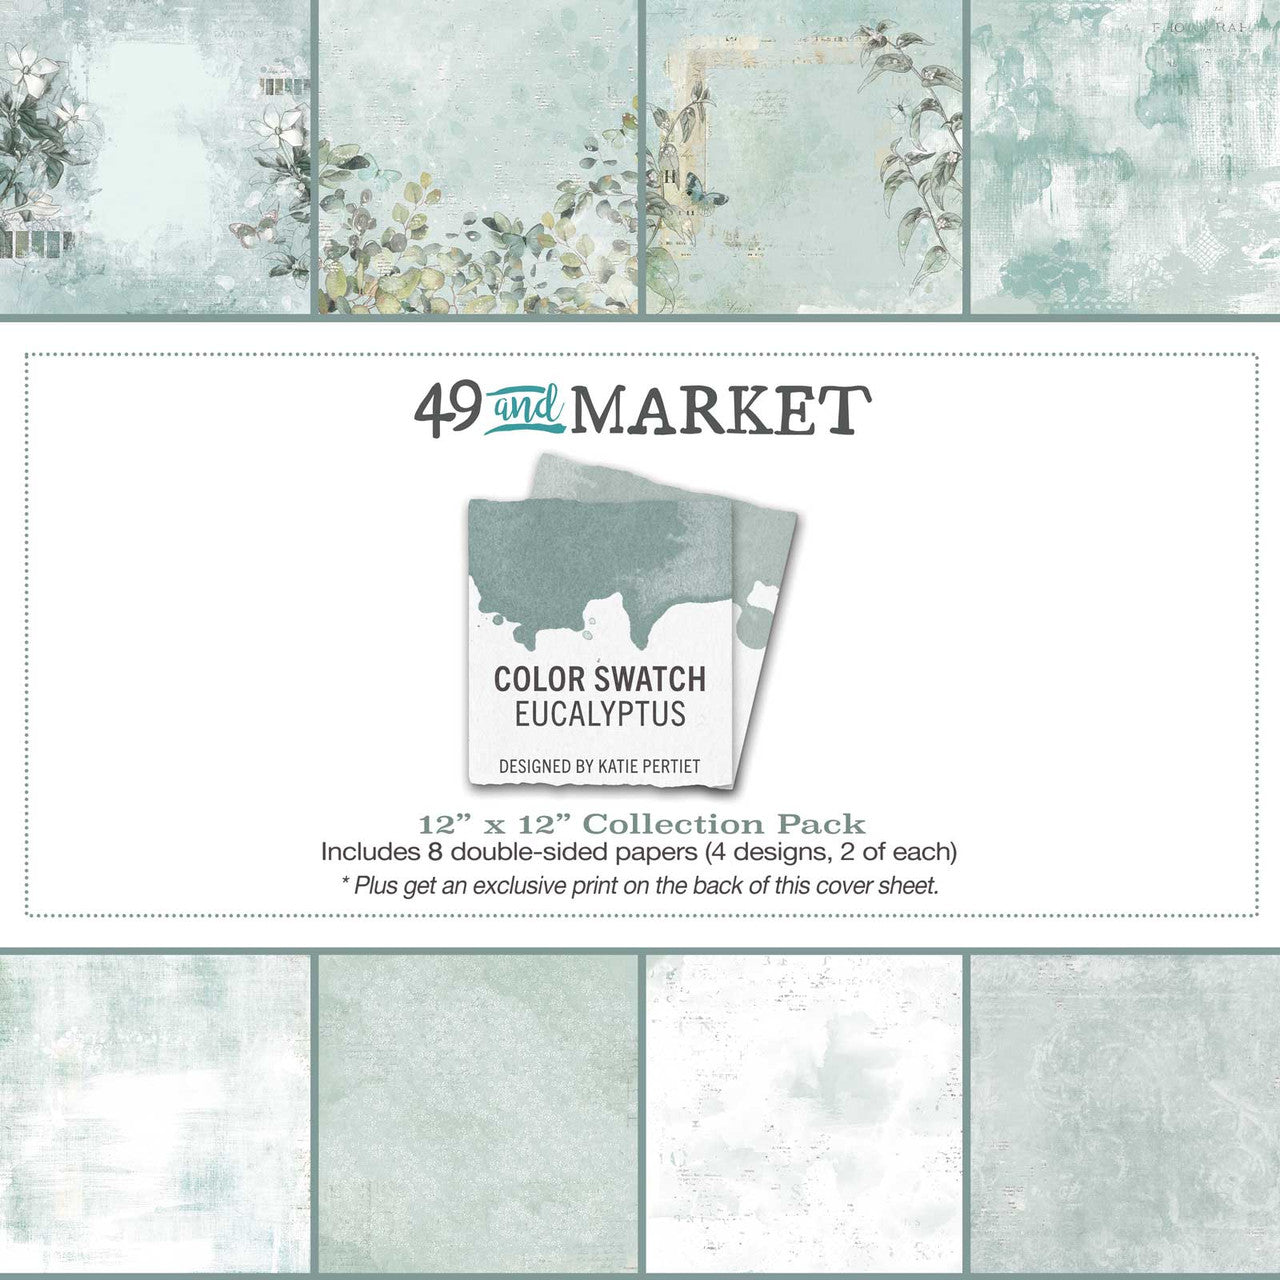 Paquete de papel de colección 49 y Market Color Swatch Eucalyptus 12 x 12